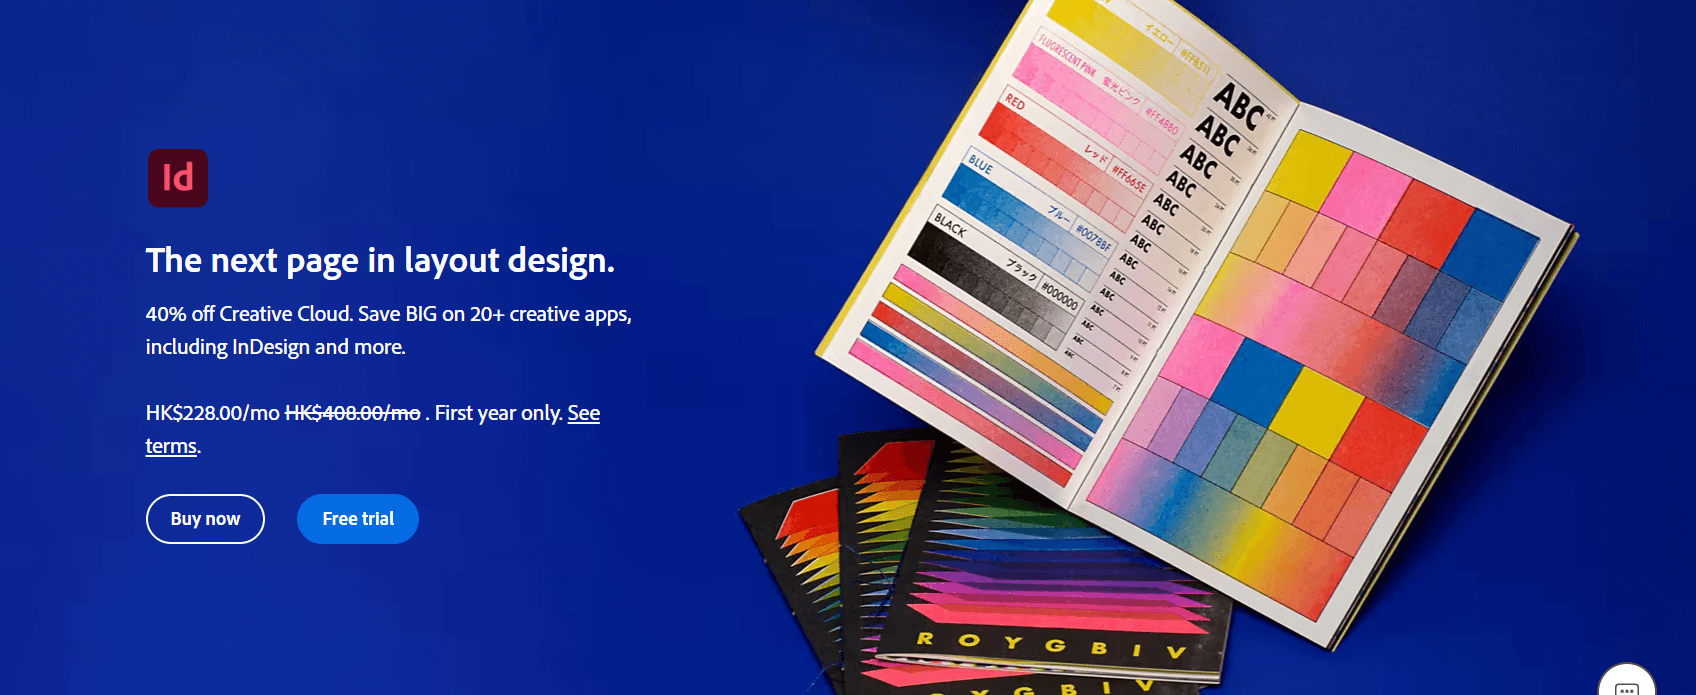 平面设计软件Adobe InDesign 